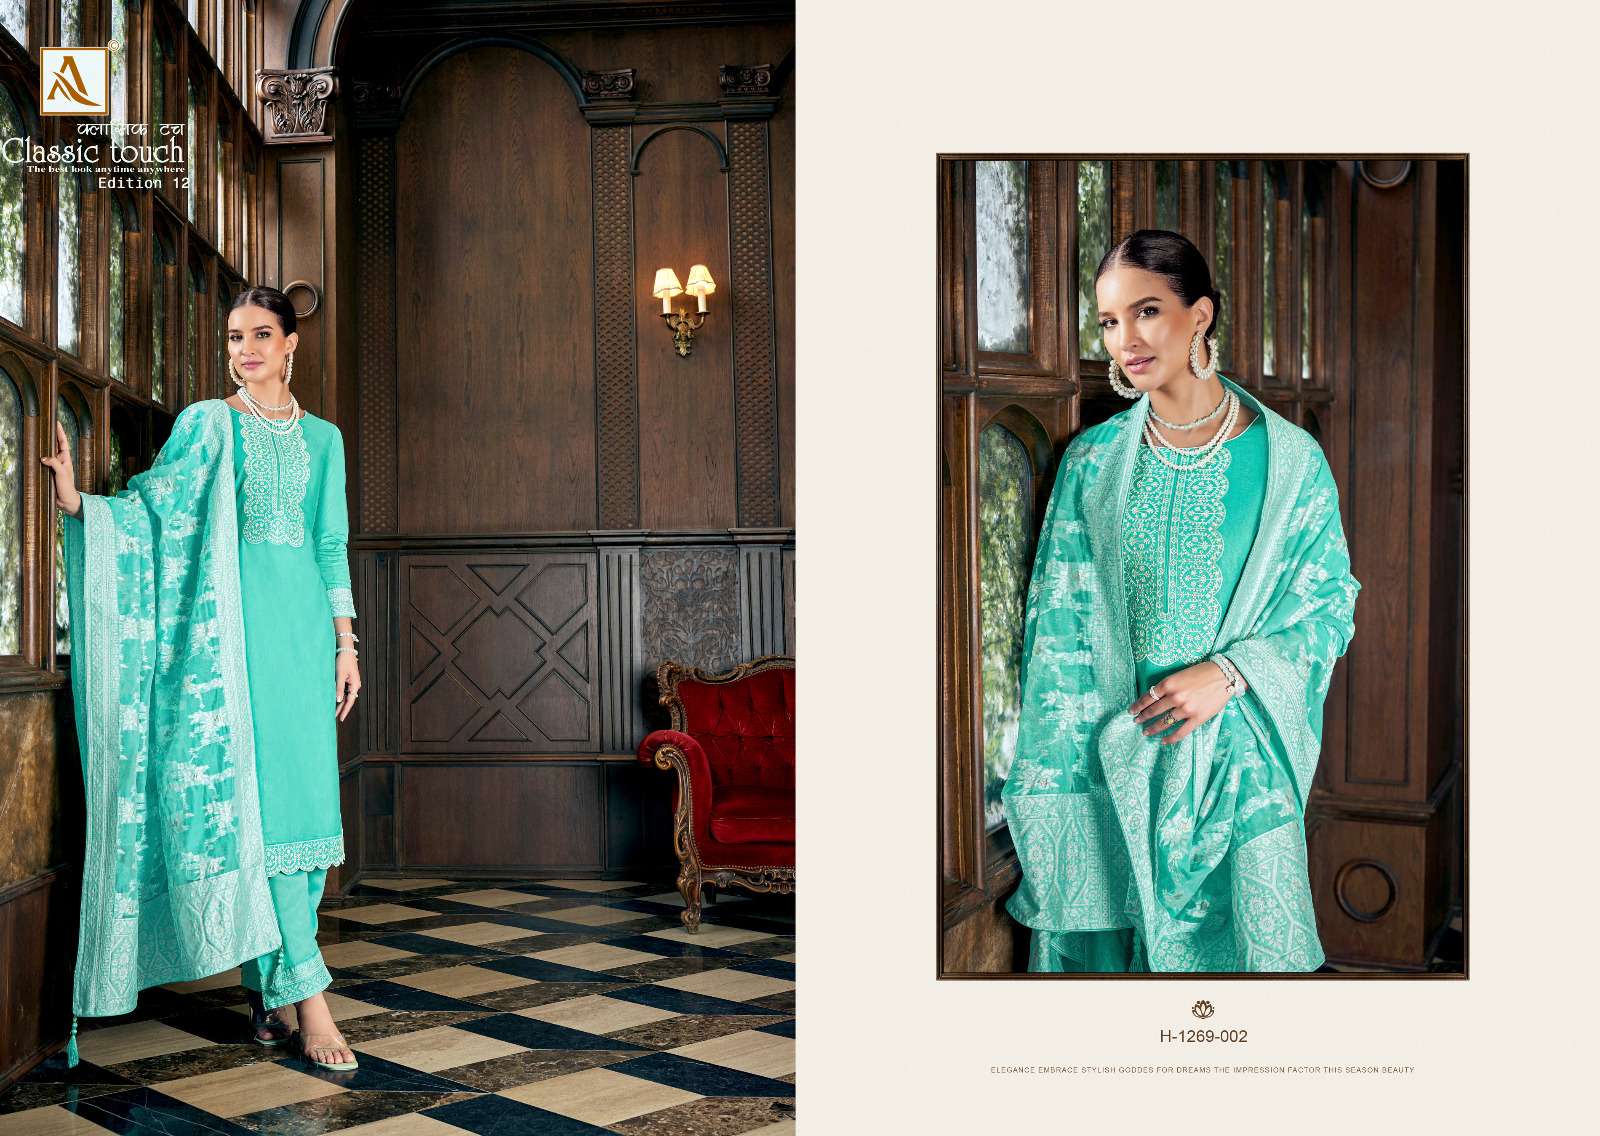 alok suit classic touch edition vol-12 unstich designer salwar kameez catalogue wholesale surat 